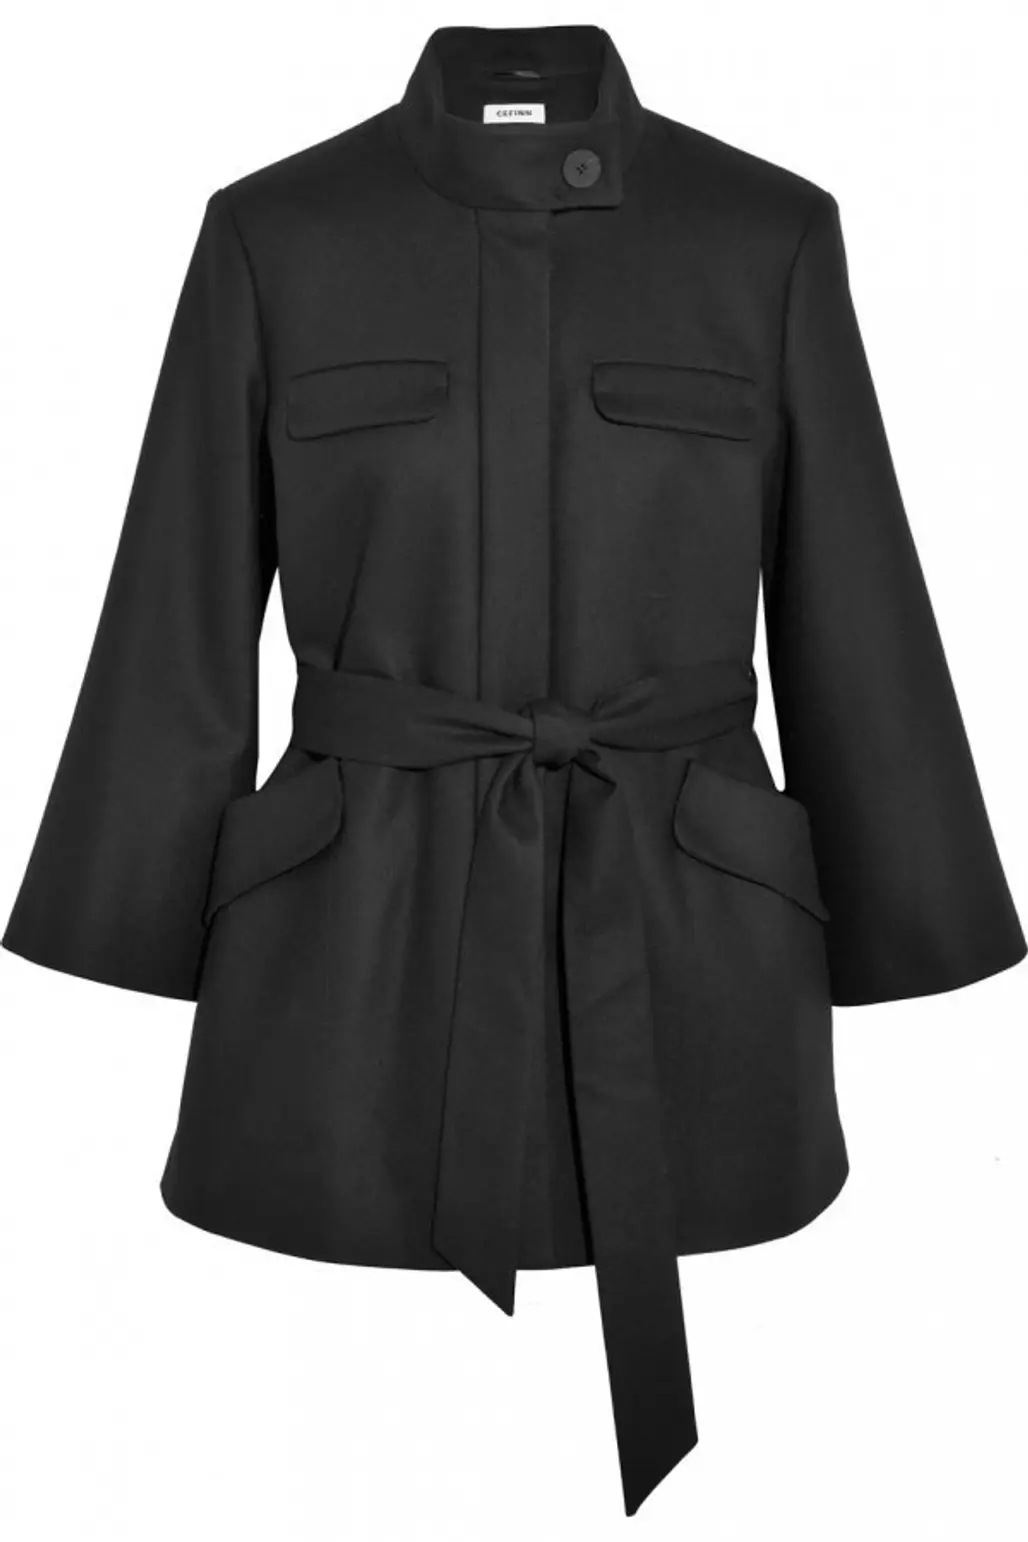 coat, black, overcoat, sleeve, trench coat,